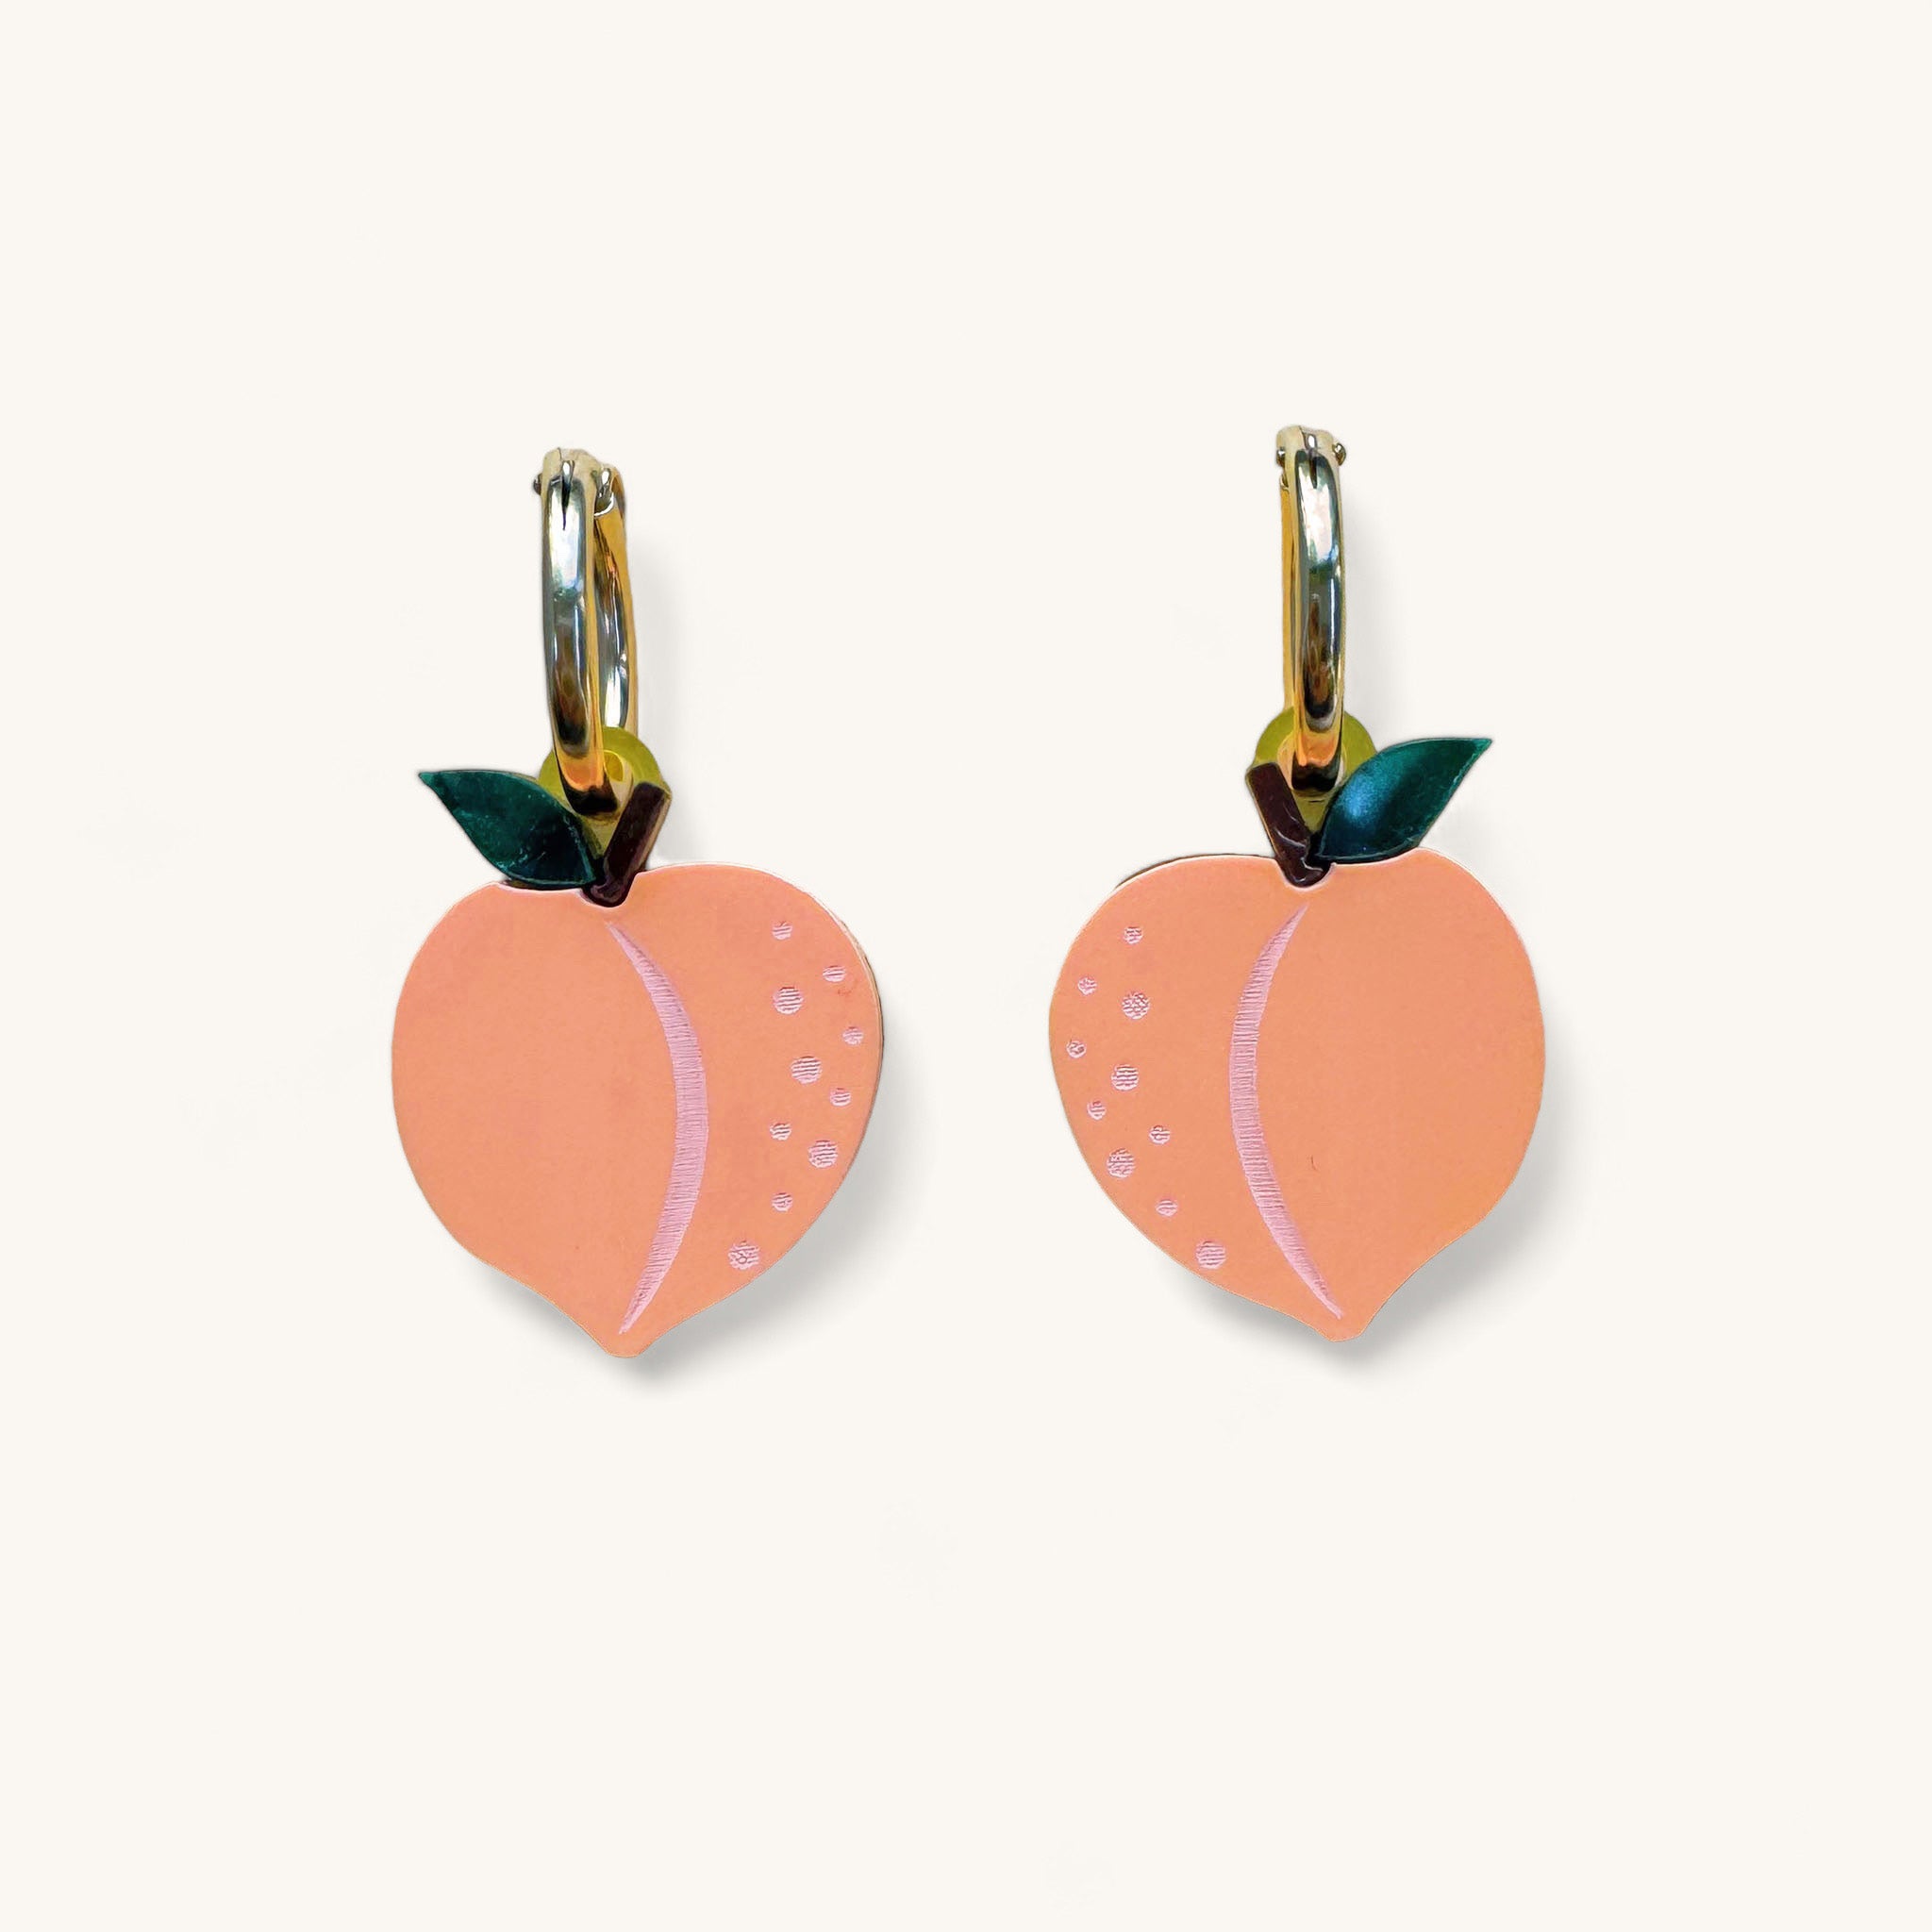 Jennifer Loiselle peach earrings with gold filled hoops